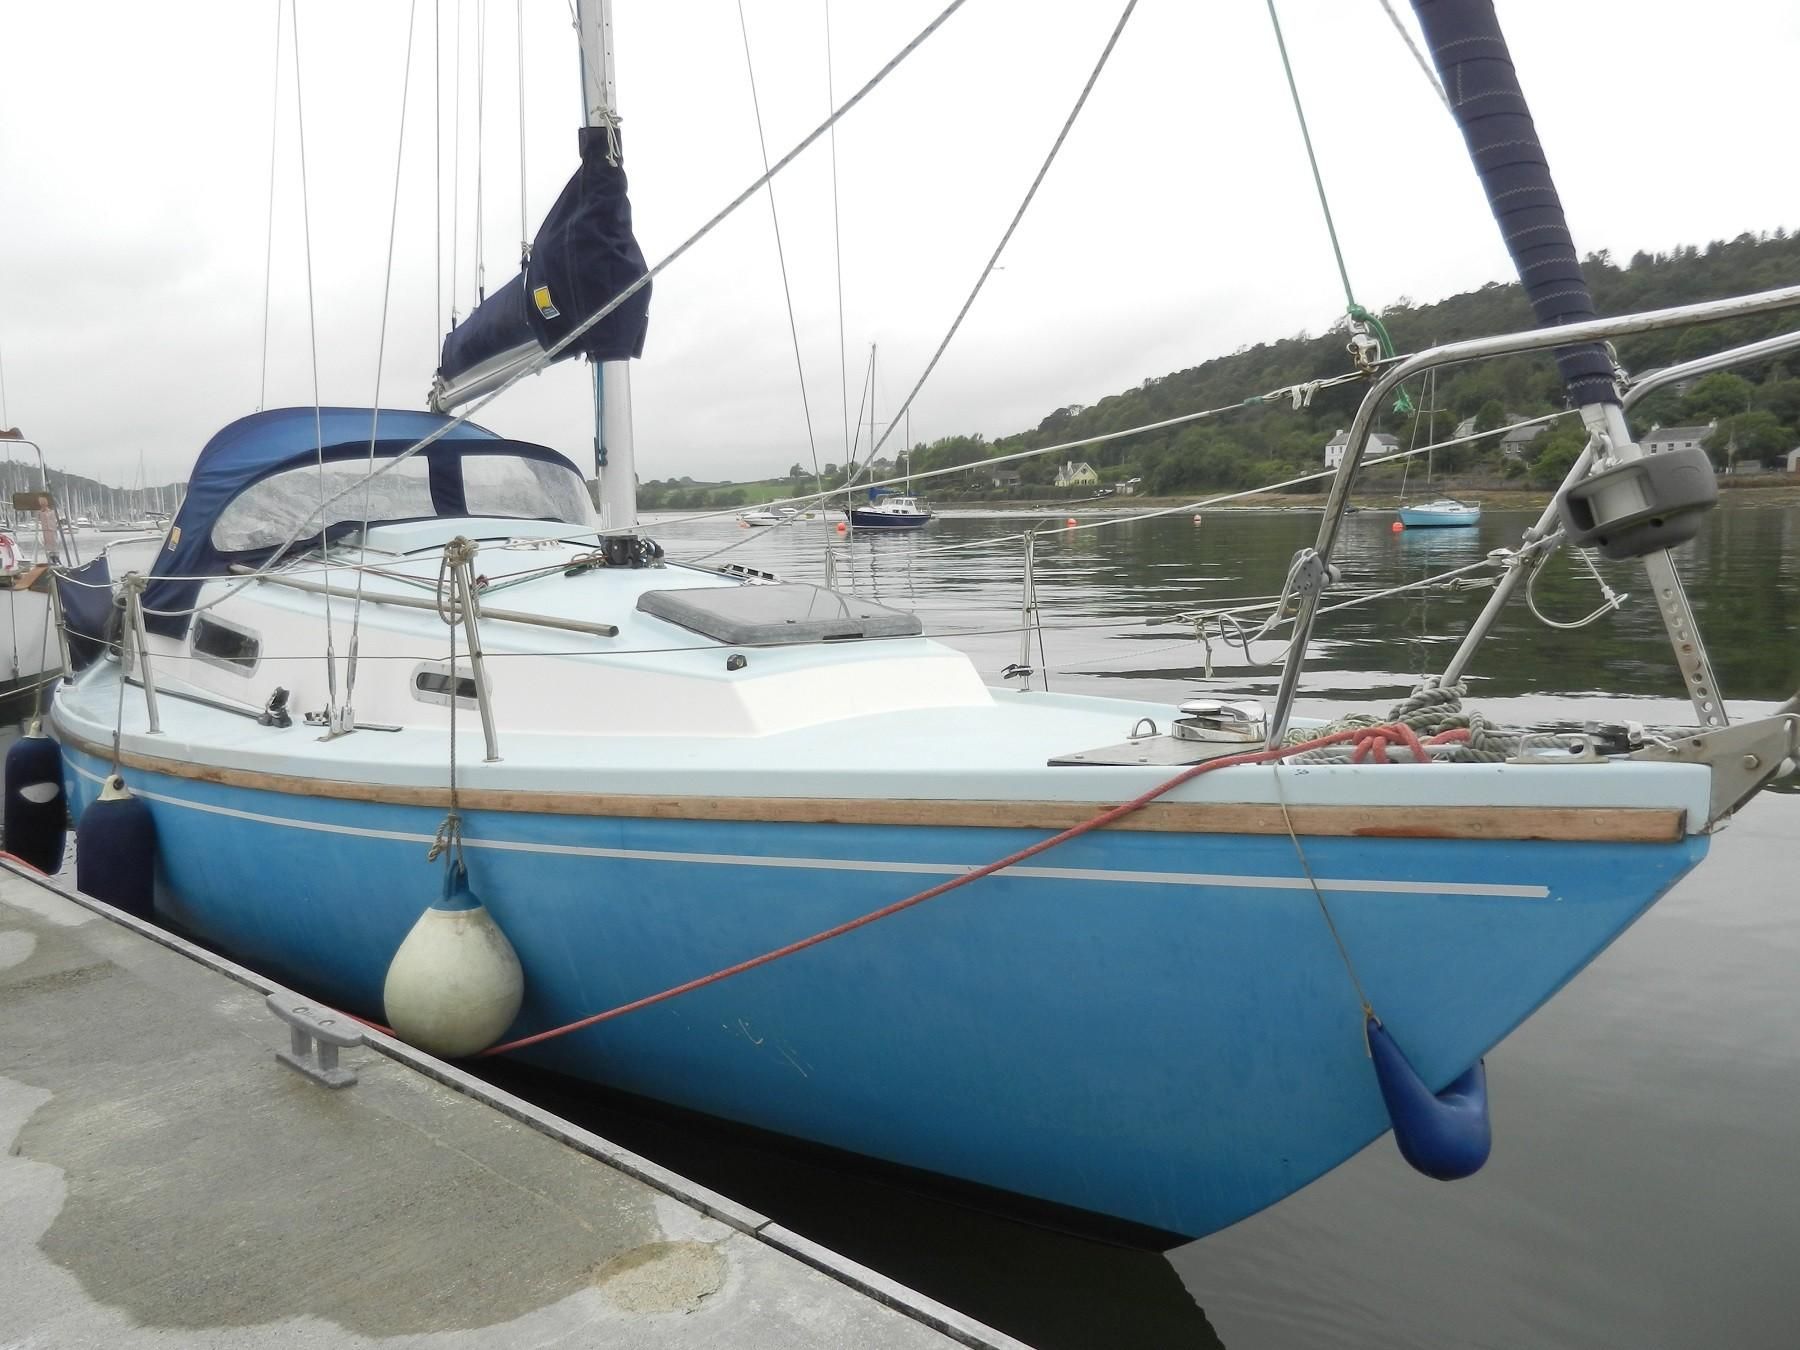 sadler yachts for sale scotland